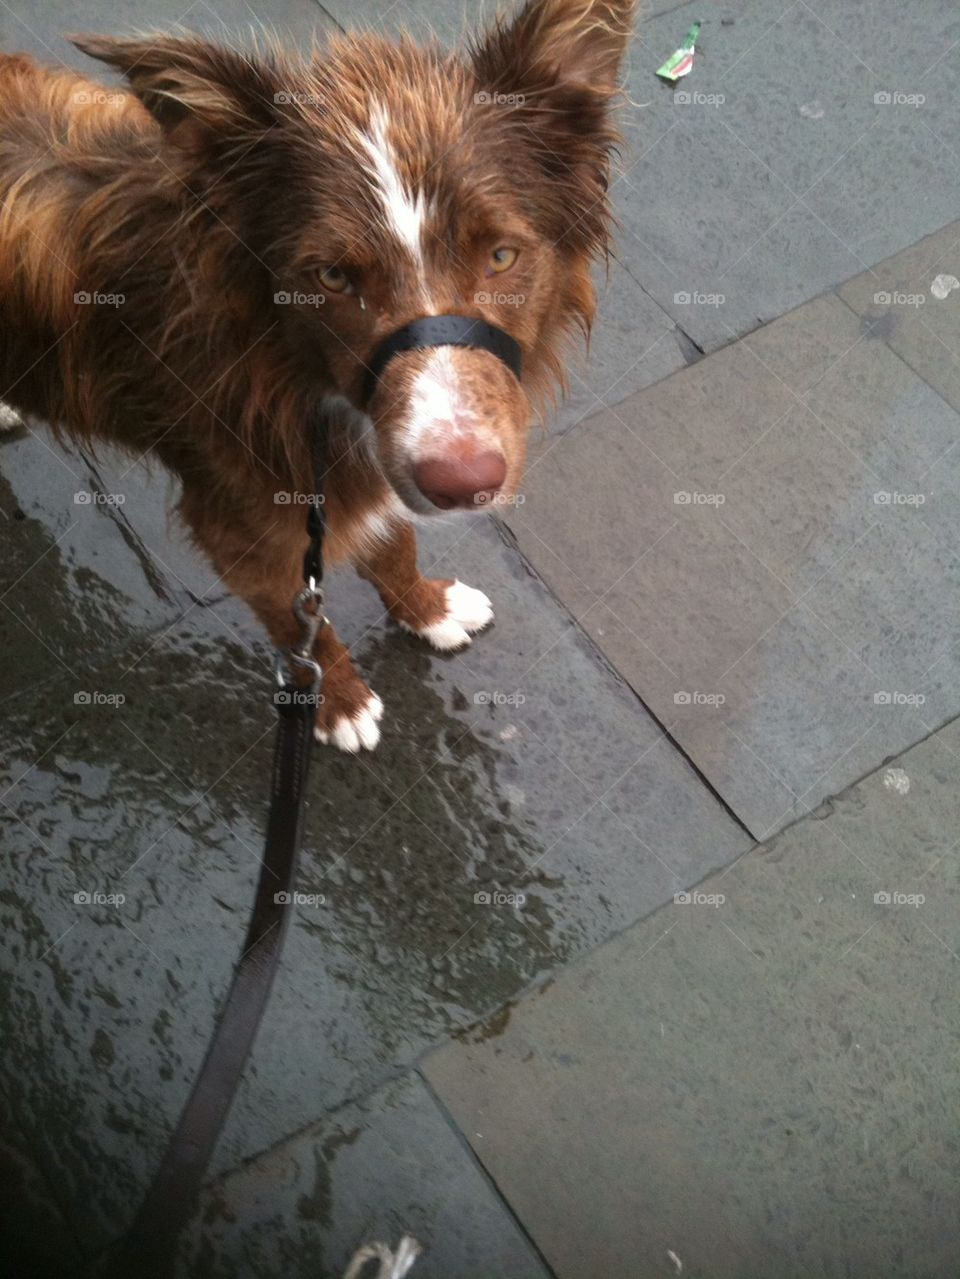 Very wet dog